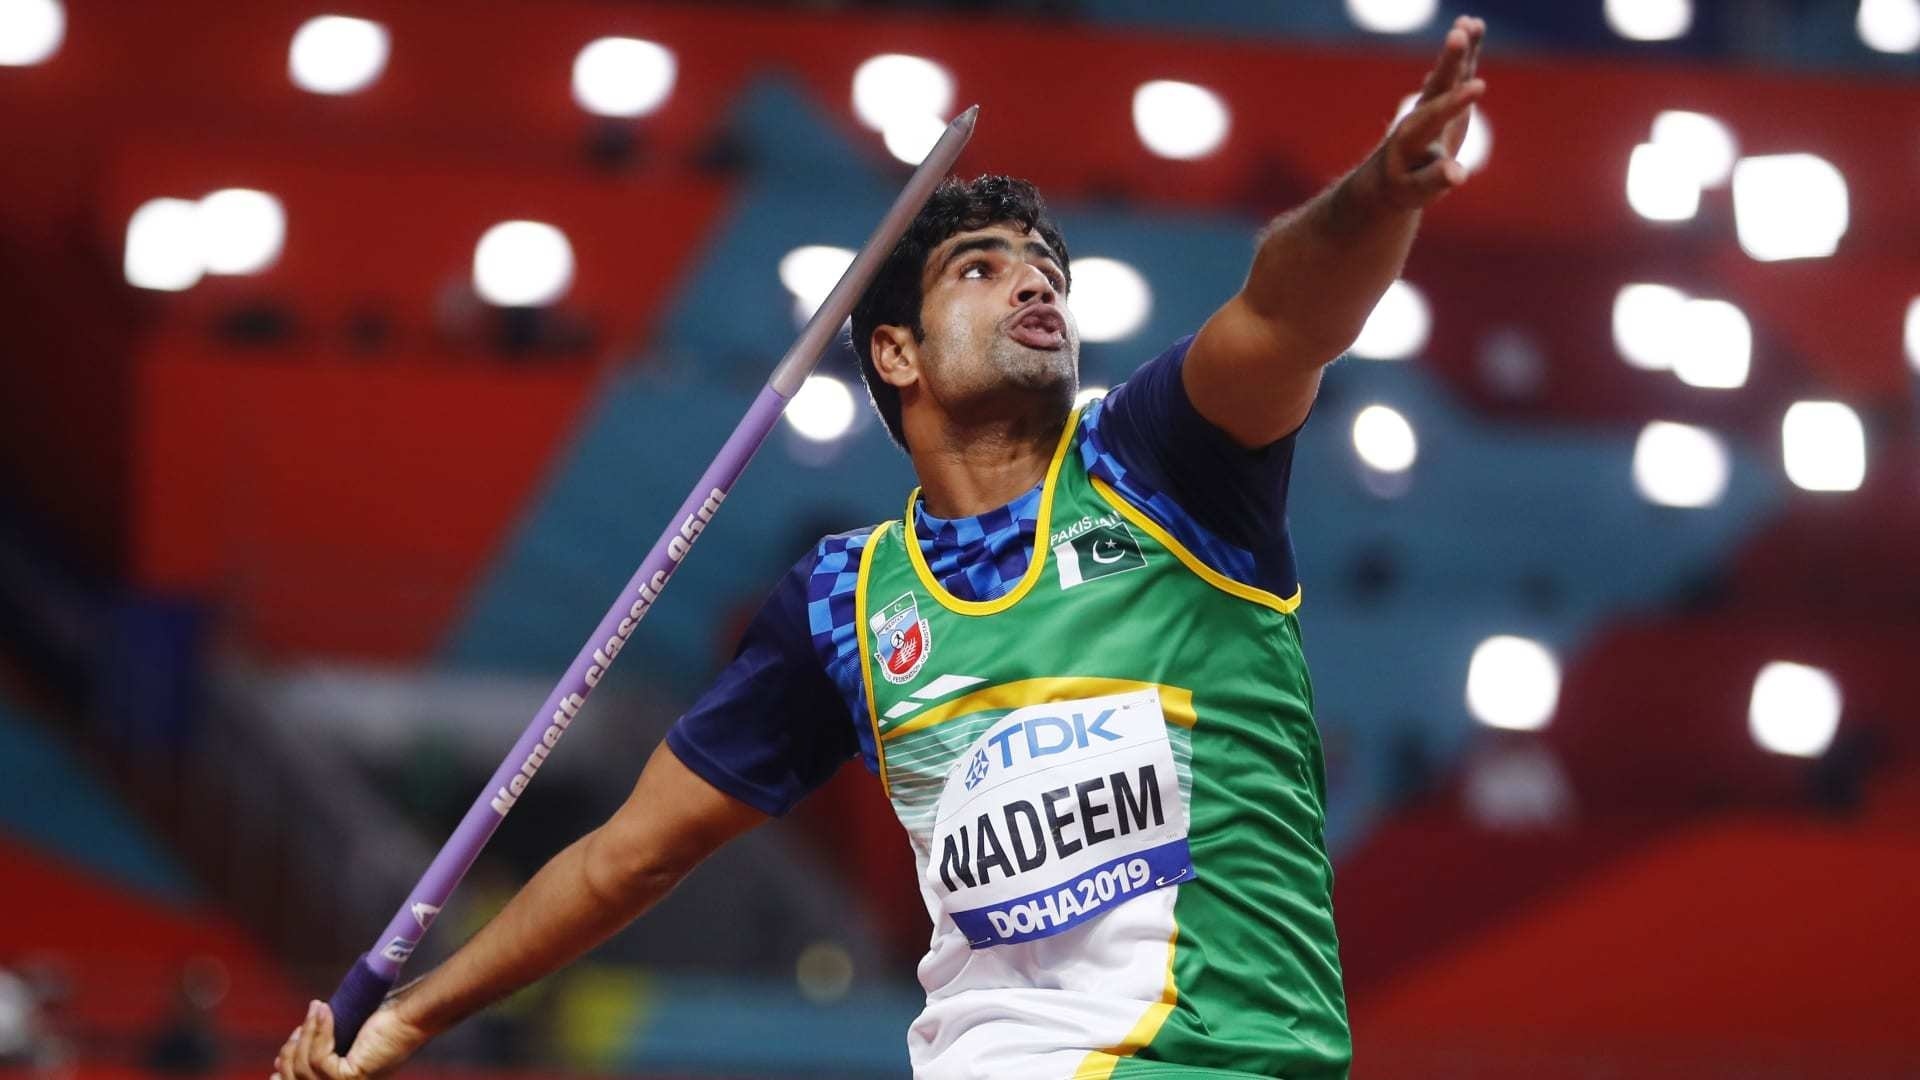 Javelin Throw: Arshad Nadeem, Men's javelin throw final in Tokyo Olympics, Doha 2019. 1920x1080 Full HD Wallpaper.